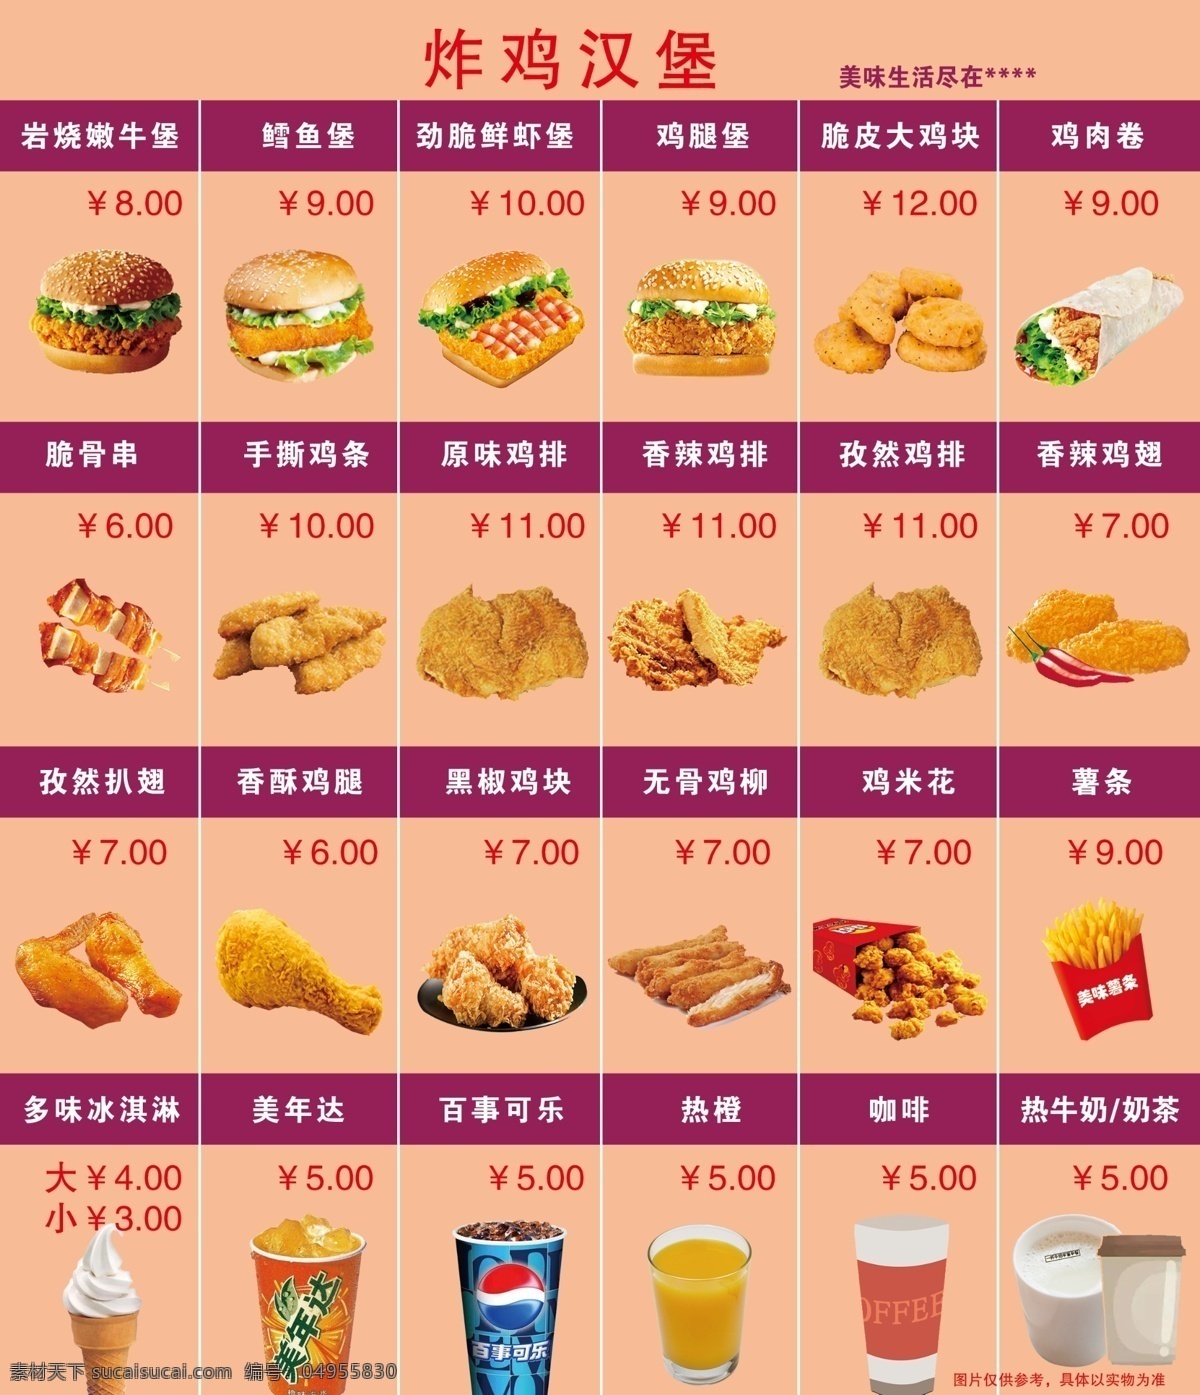 炸鸡汉堡菜谱 炸鸡菜谱 汉堡菜谱 炸鸡价格表 汉堡价格表 汉堡菜单 分层